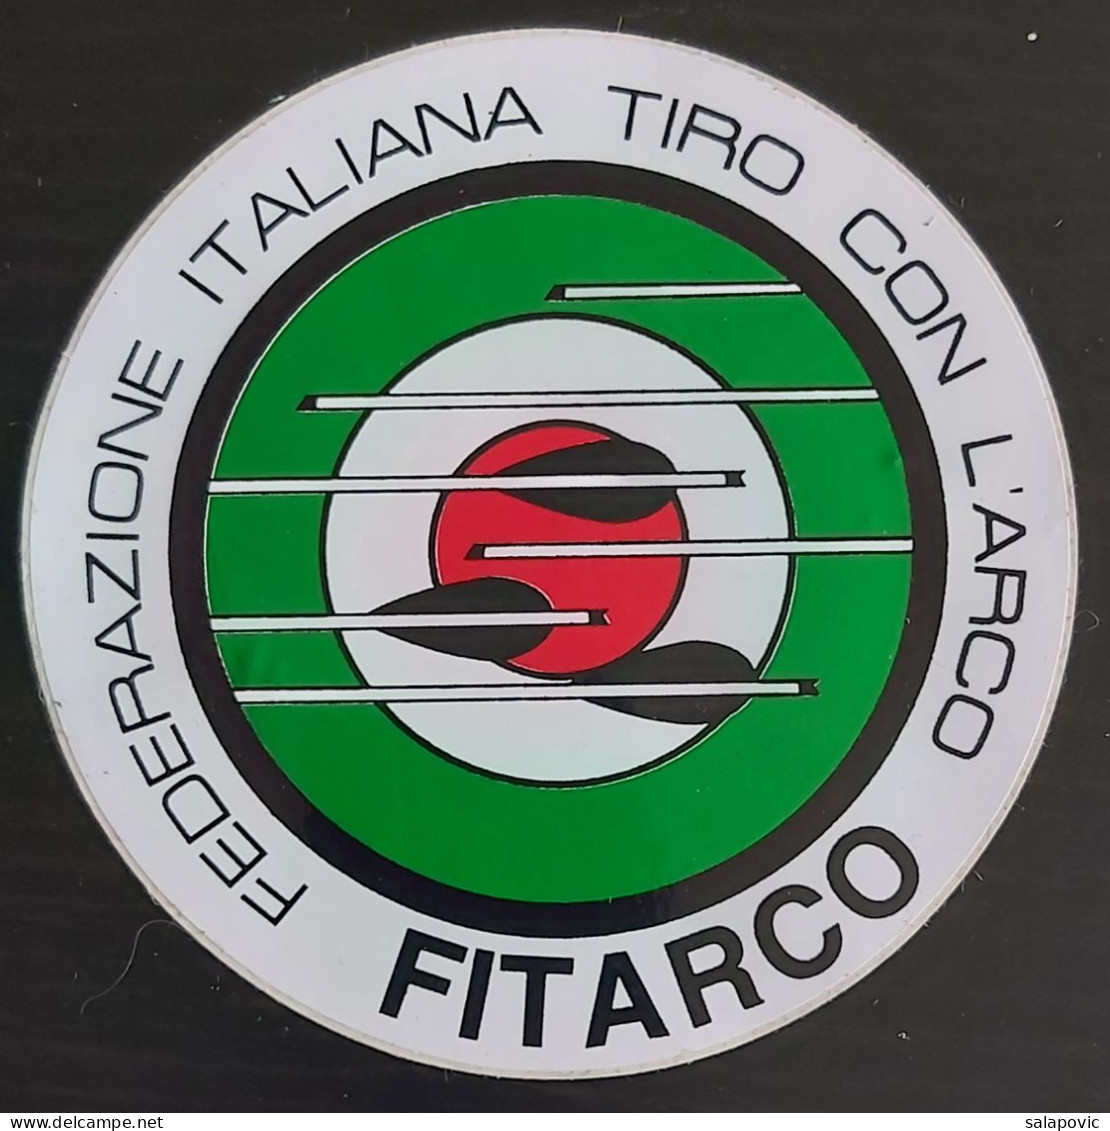 FITARCO - Federazione Italiana Tiro Con L'Arco, Italian Archery Federation Italy  Sticker  Label - Archery